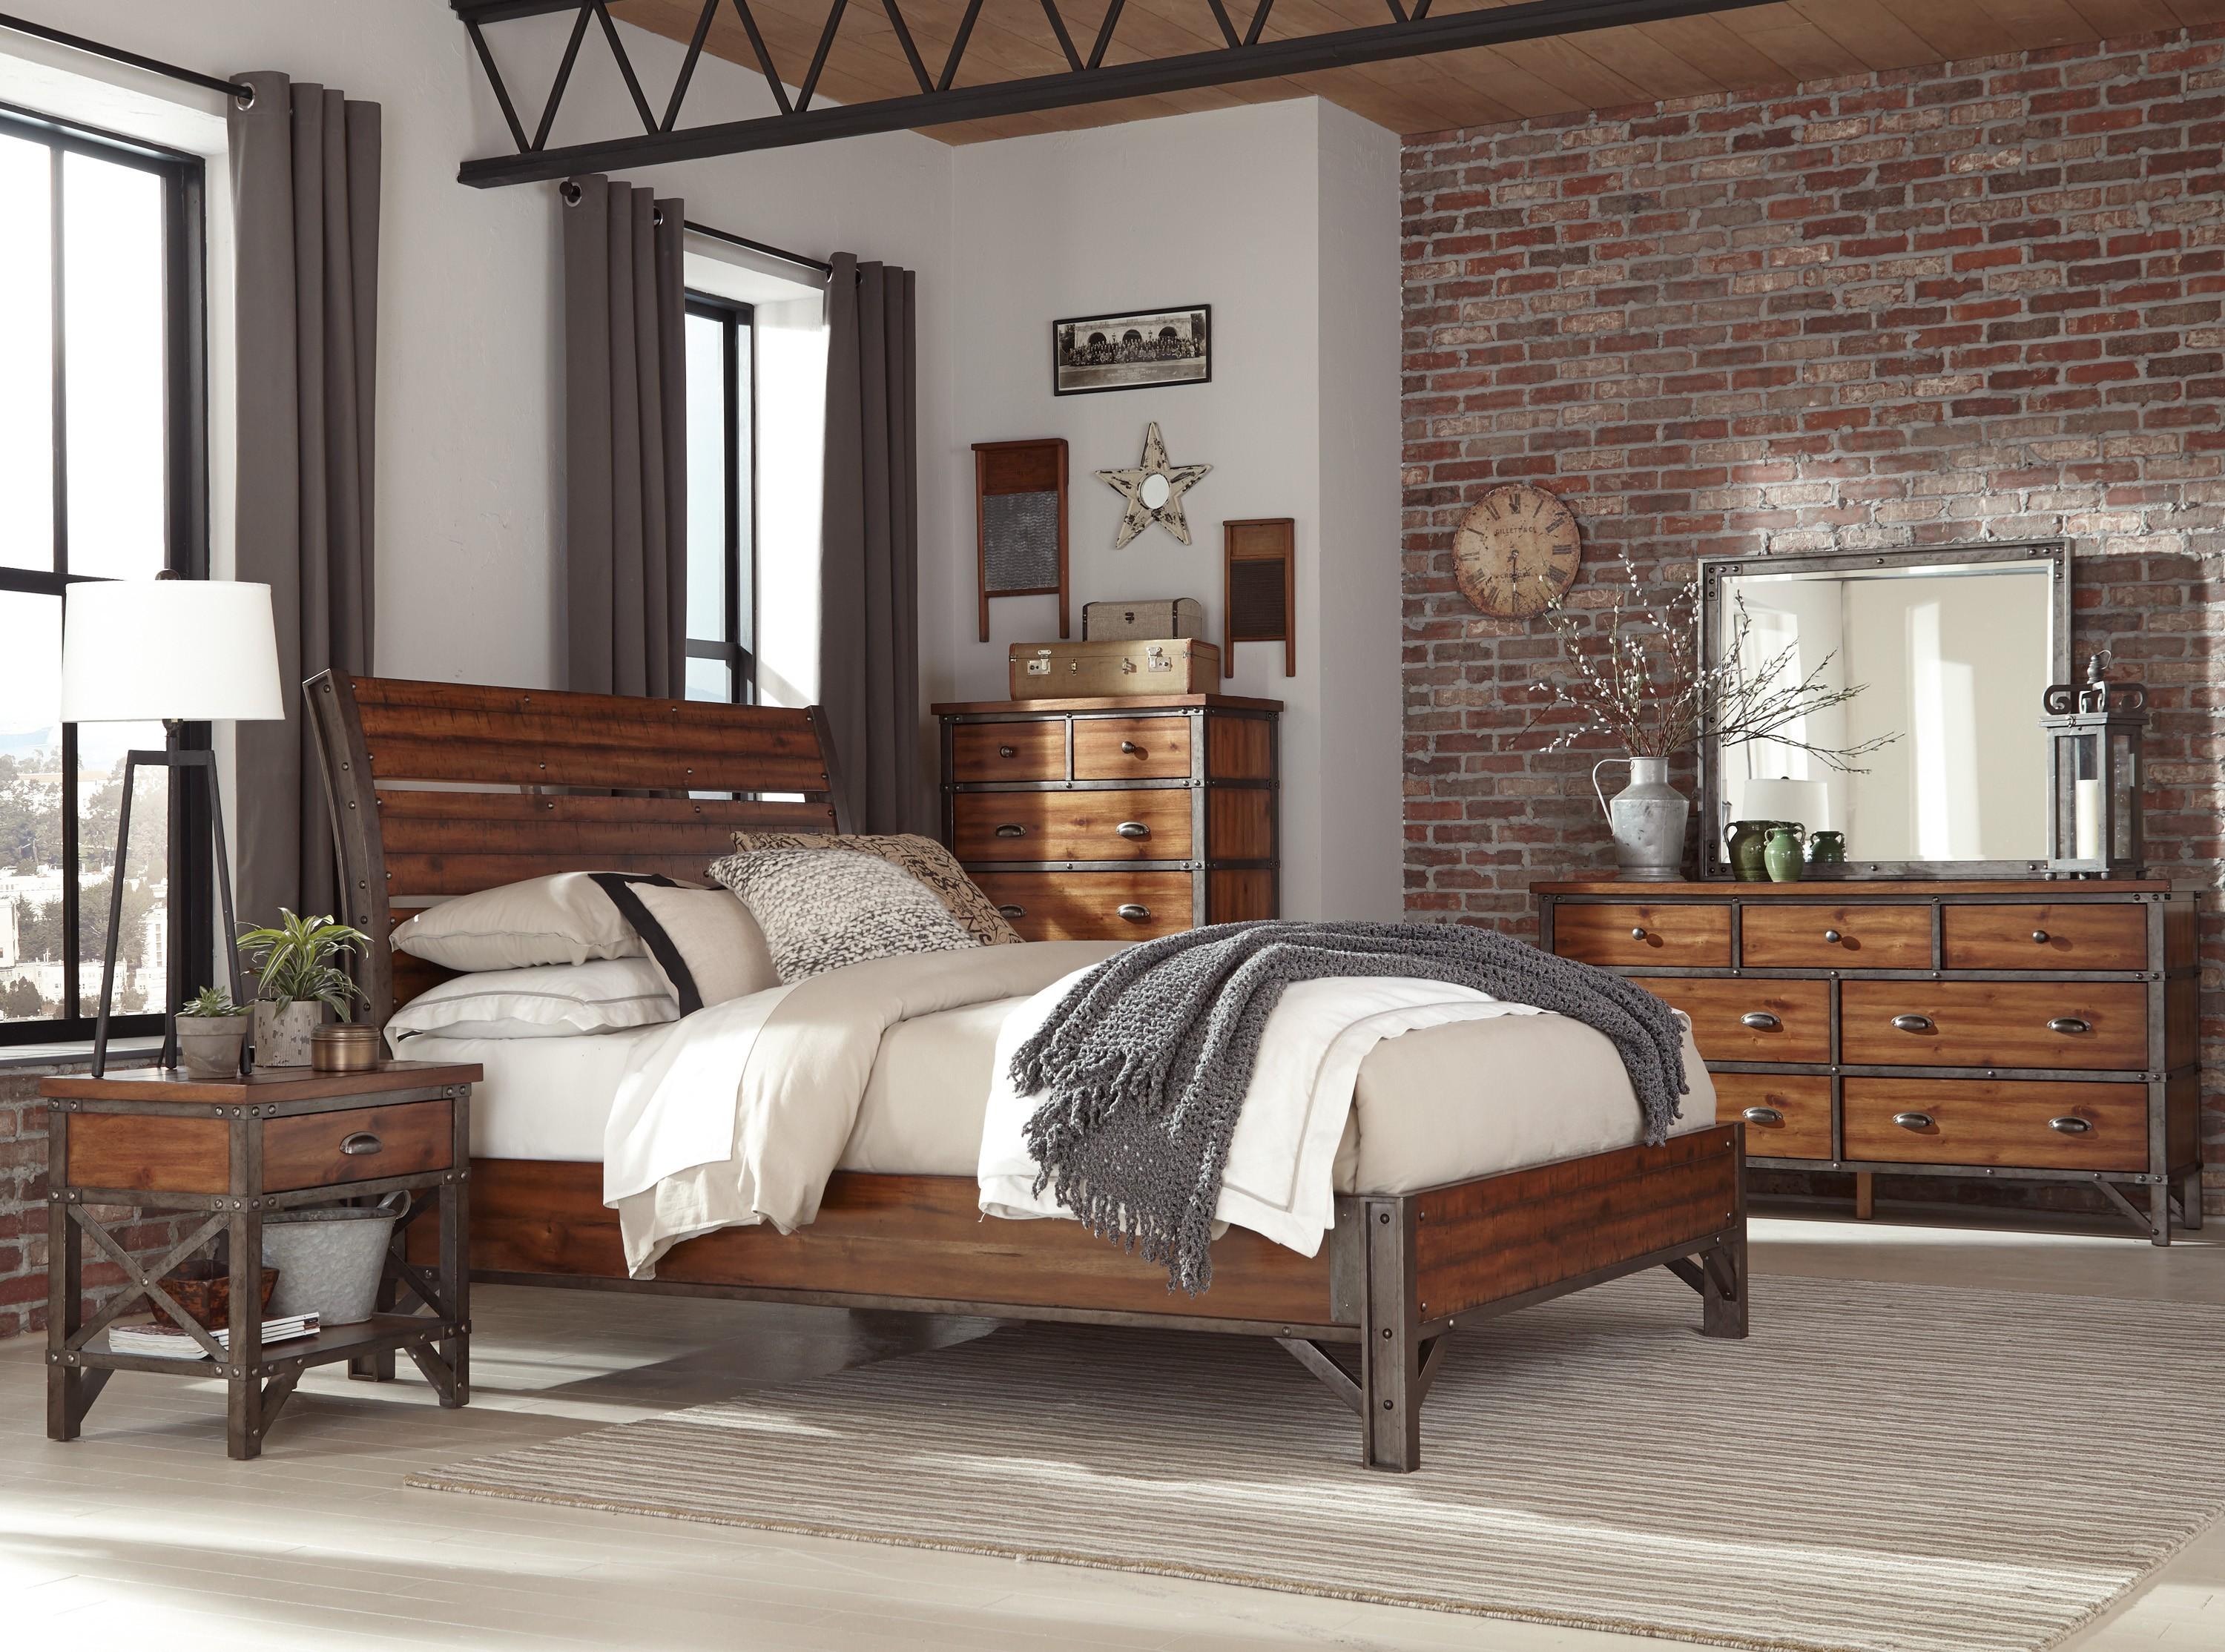 

    
Industrial Rustic Brown & Gunmetal Wood Queen Bedroom Set 5pcs Homelegance 1715-1* Holverson
